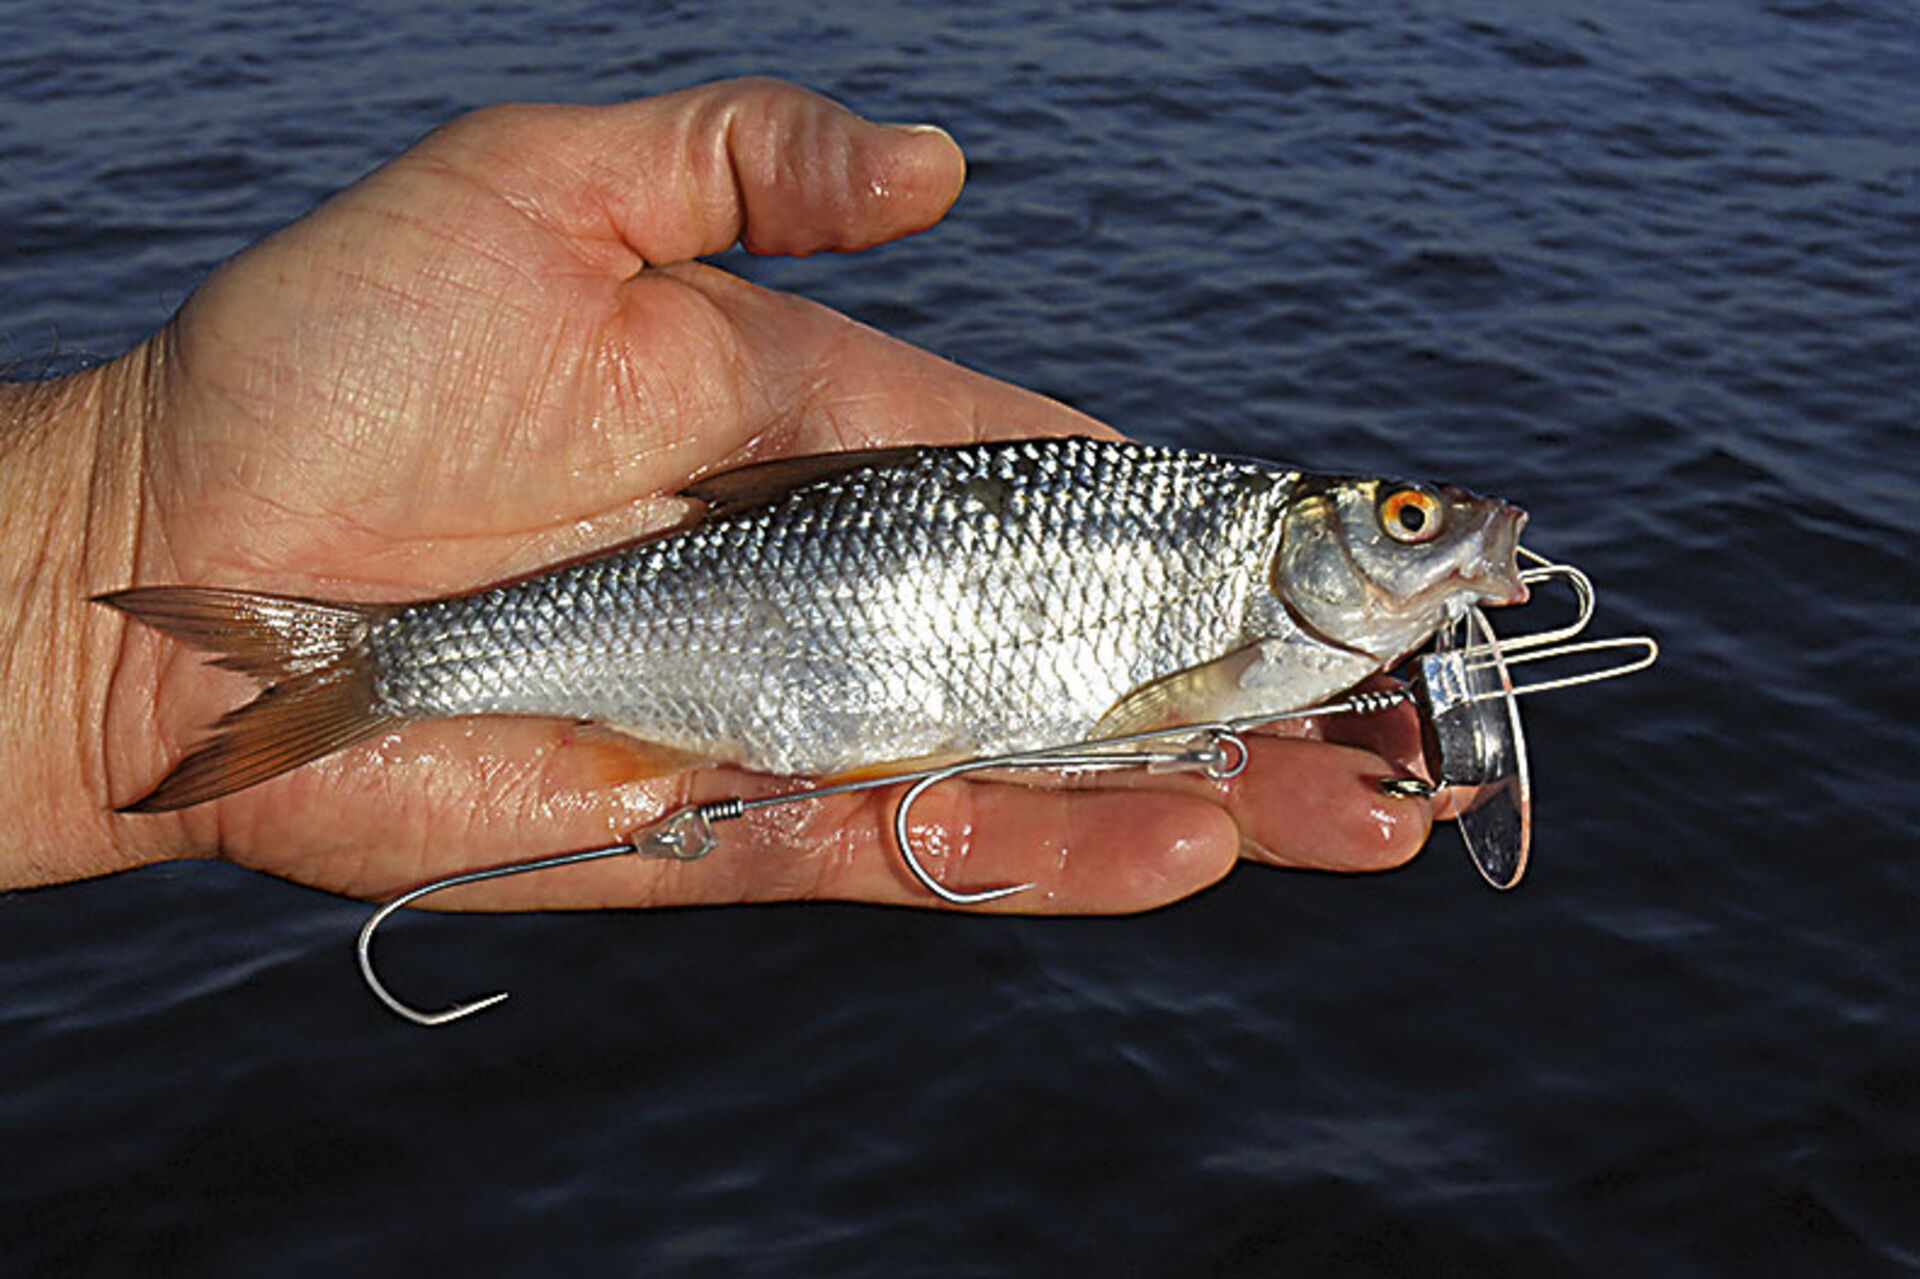  4. Der Köderfisch wird gerade und symmetrisch auf dem System montiert. Wenn Einzelhaken verwendet werden, empfiehlt es sich, diese mit kurzen Silikonschlauch-Stücken in ihrer Lage zu stabilisieren.  